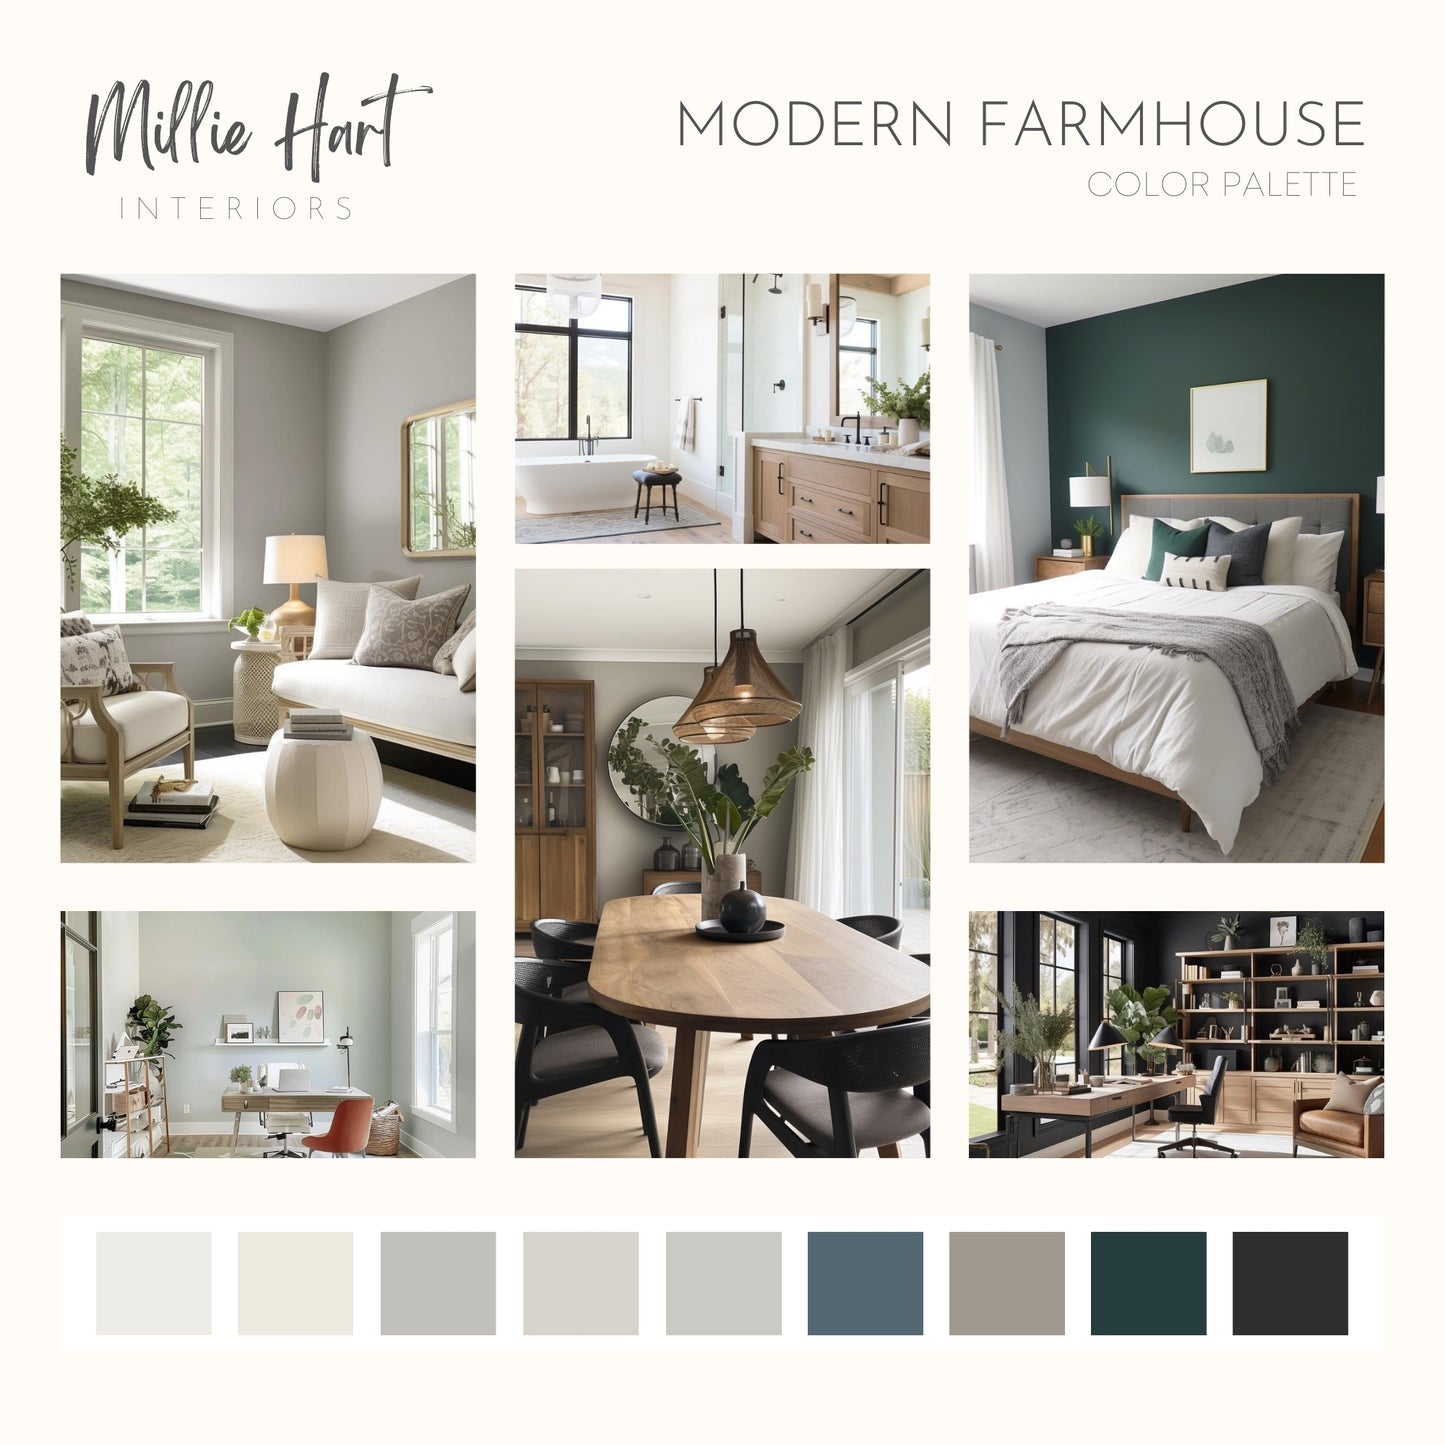 Modern Farmhouse Sherwin Williams Paint Palette, Neutral Interior Paint Colors, Modern Farmhouse Color Scheme, Pure White